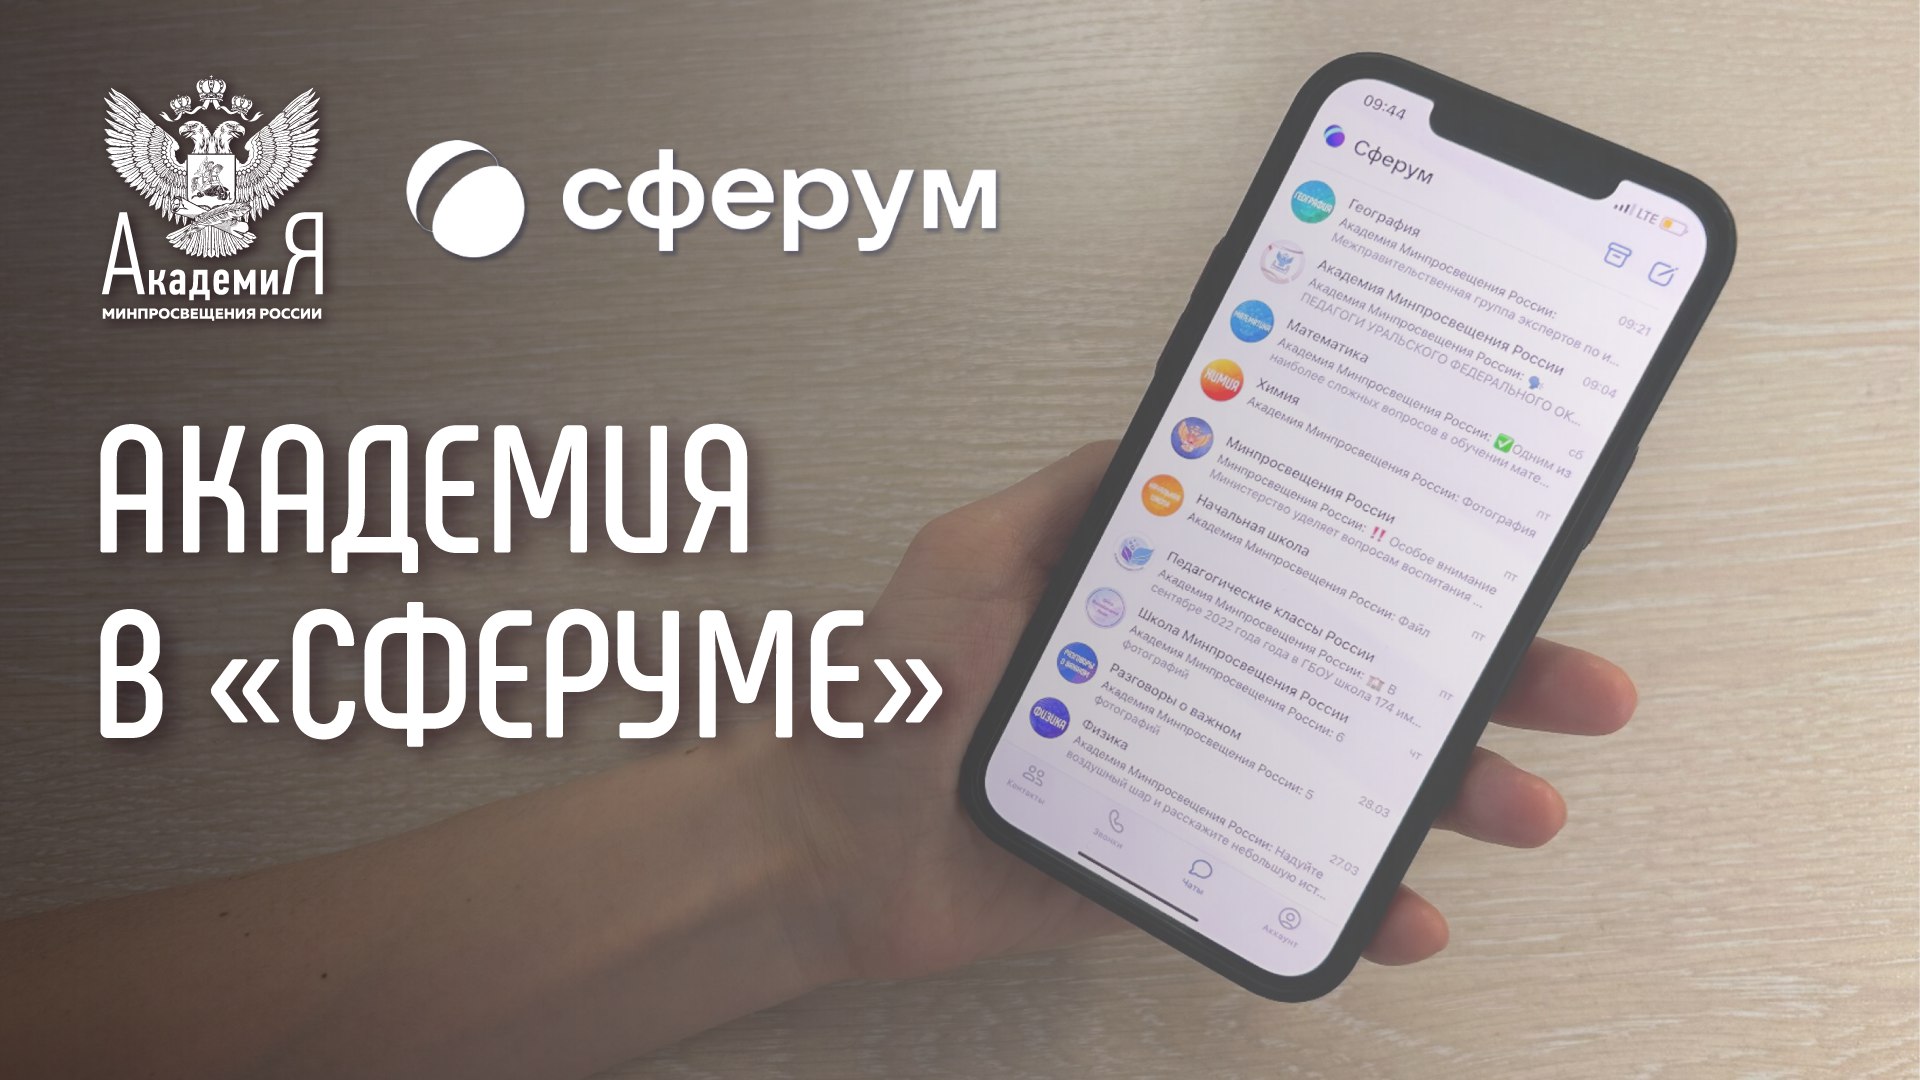 Академия Минпросвещения России запустила информационные каналы в «Сферуме»